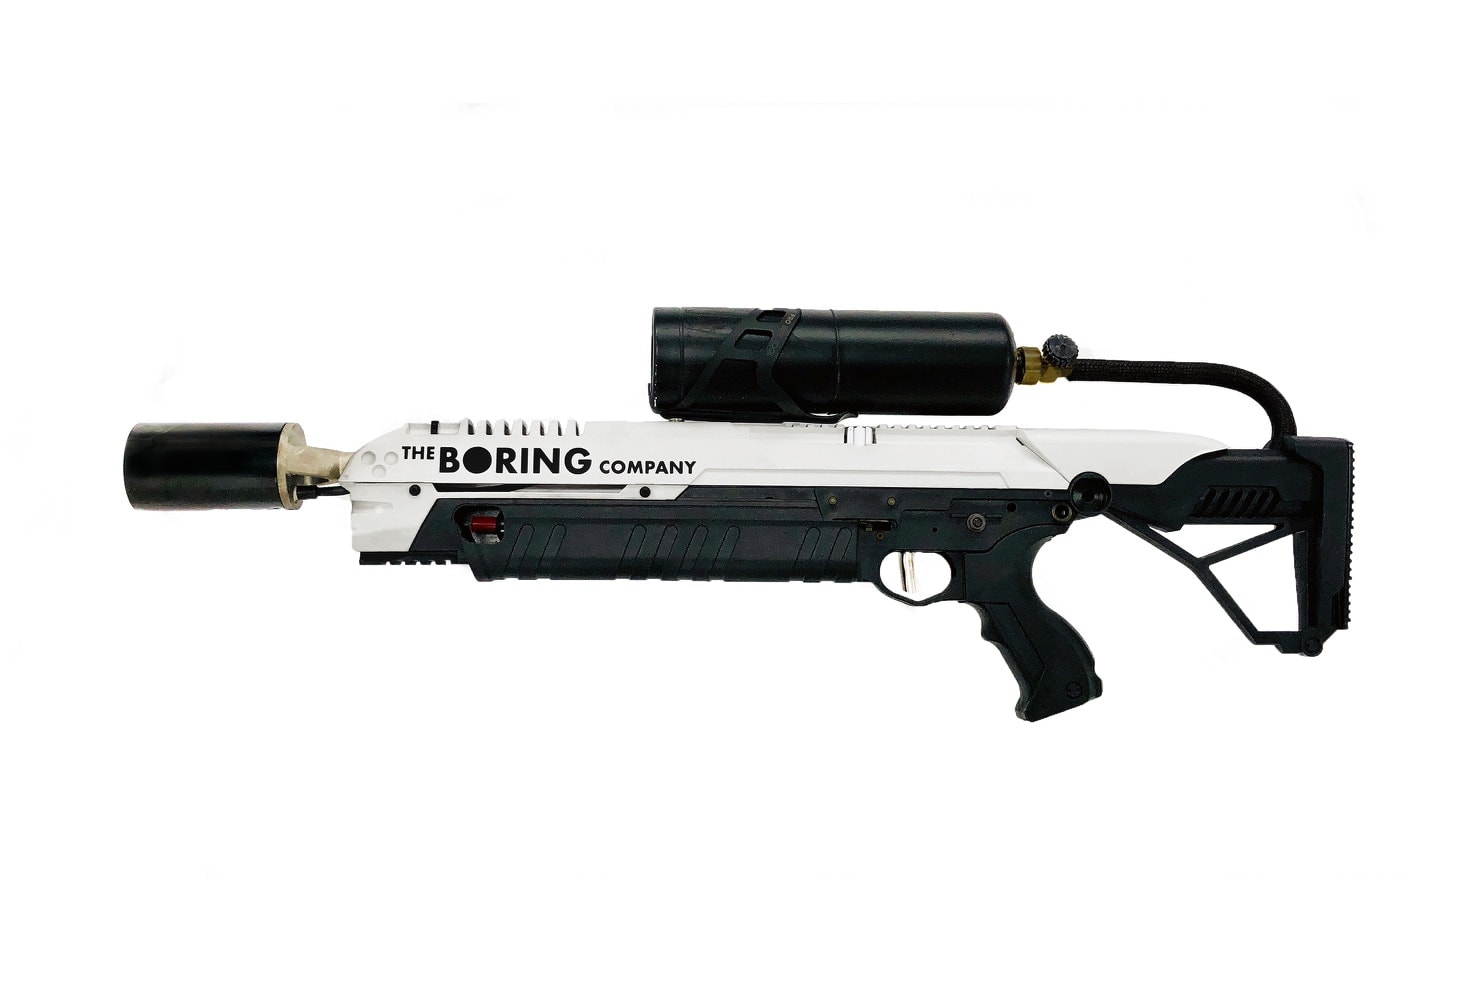 加州議員將阻止 The Boring Company 火焰噴射器公開銷售